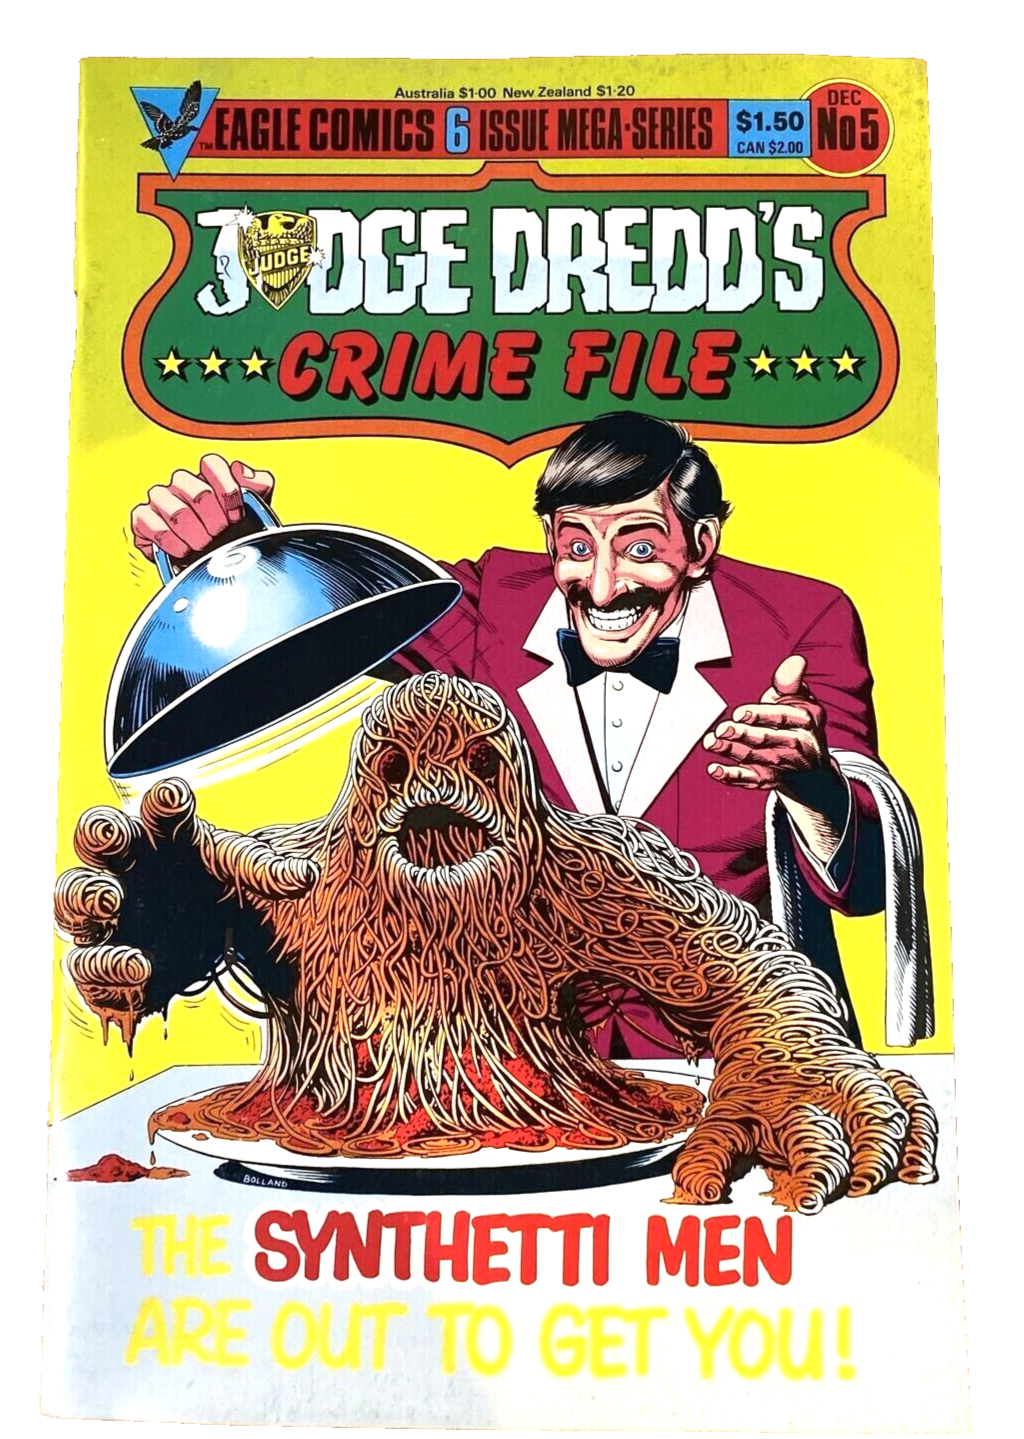 Primary image for Judge Dredd's Crime File Comic Book #5 Eagle 1985